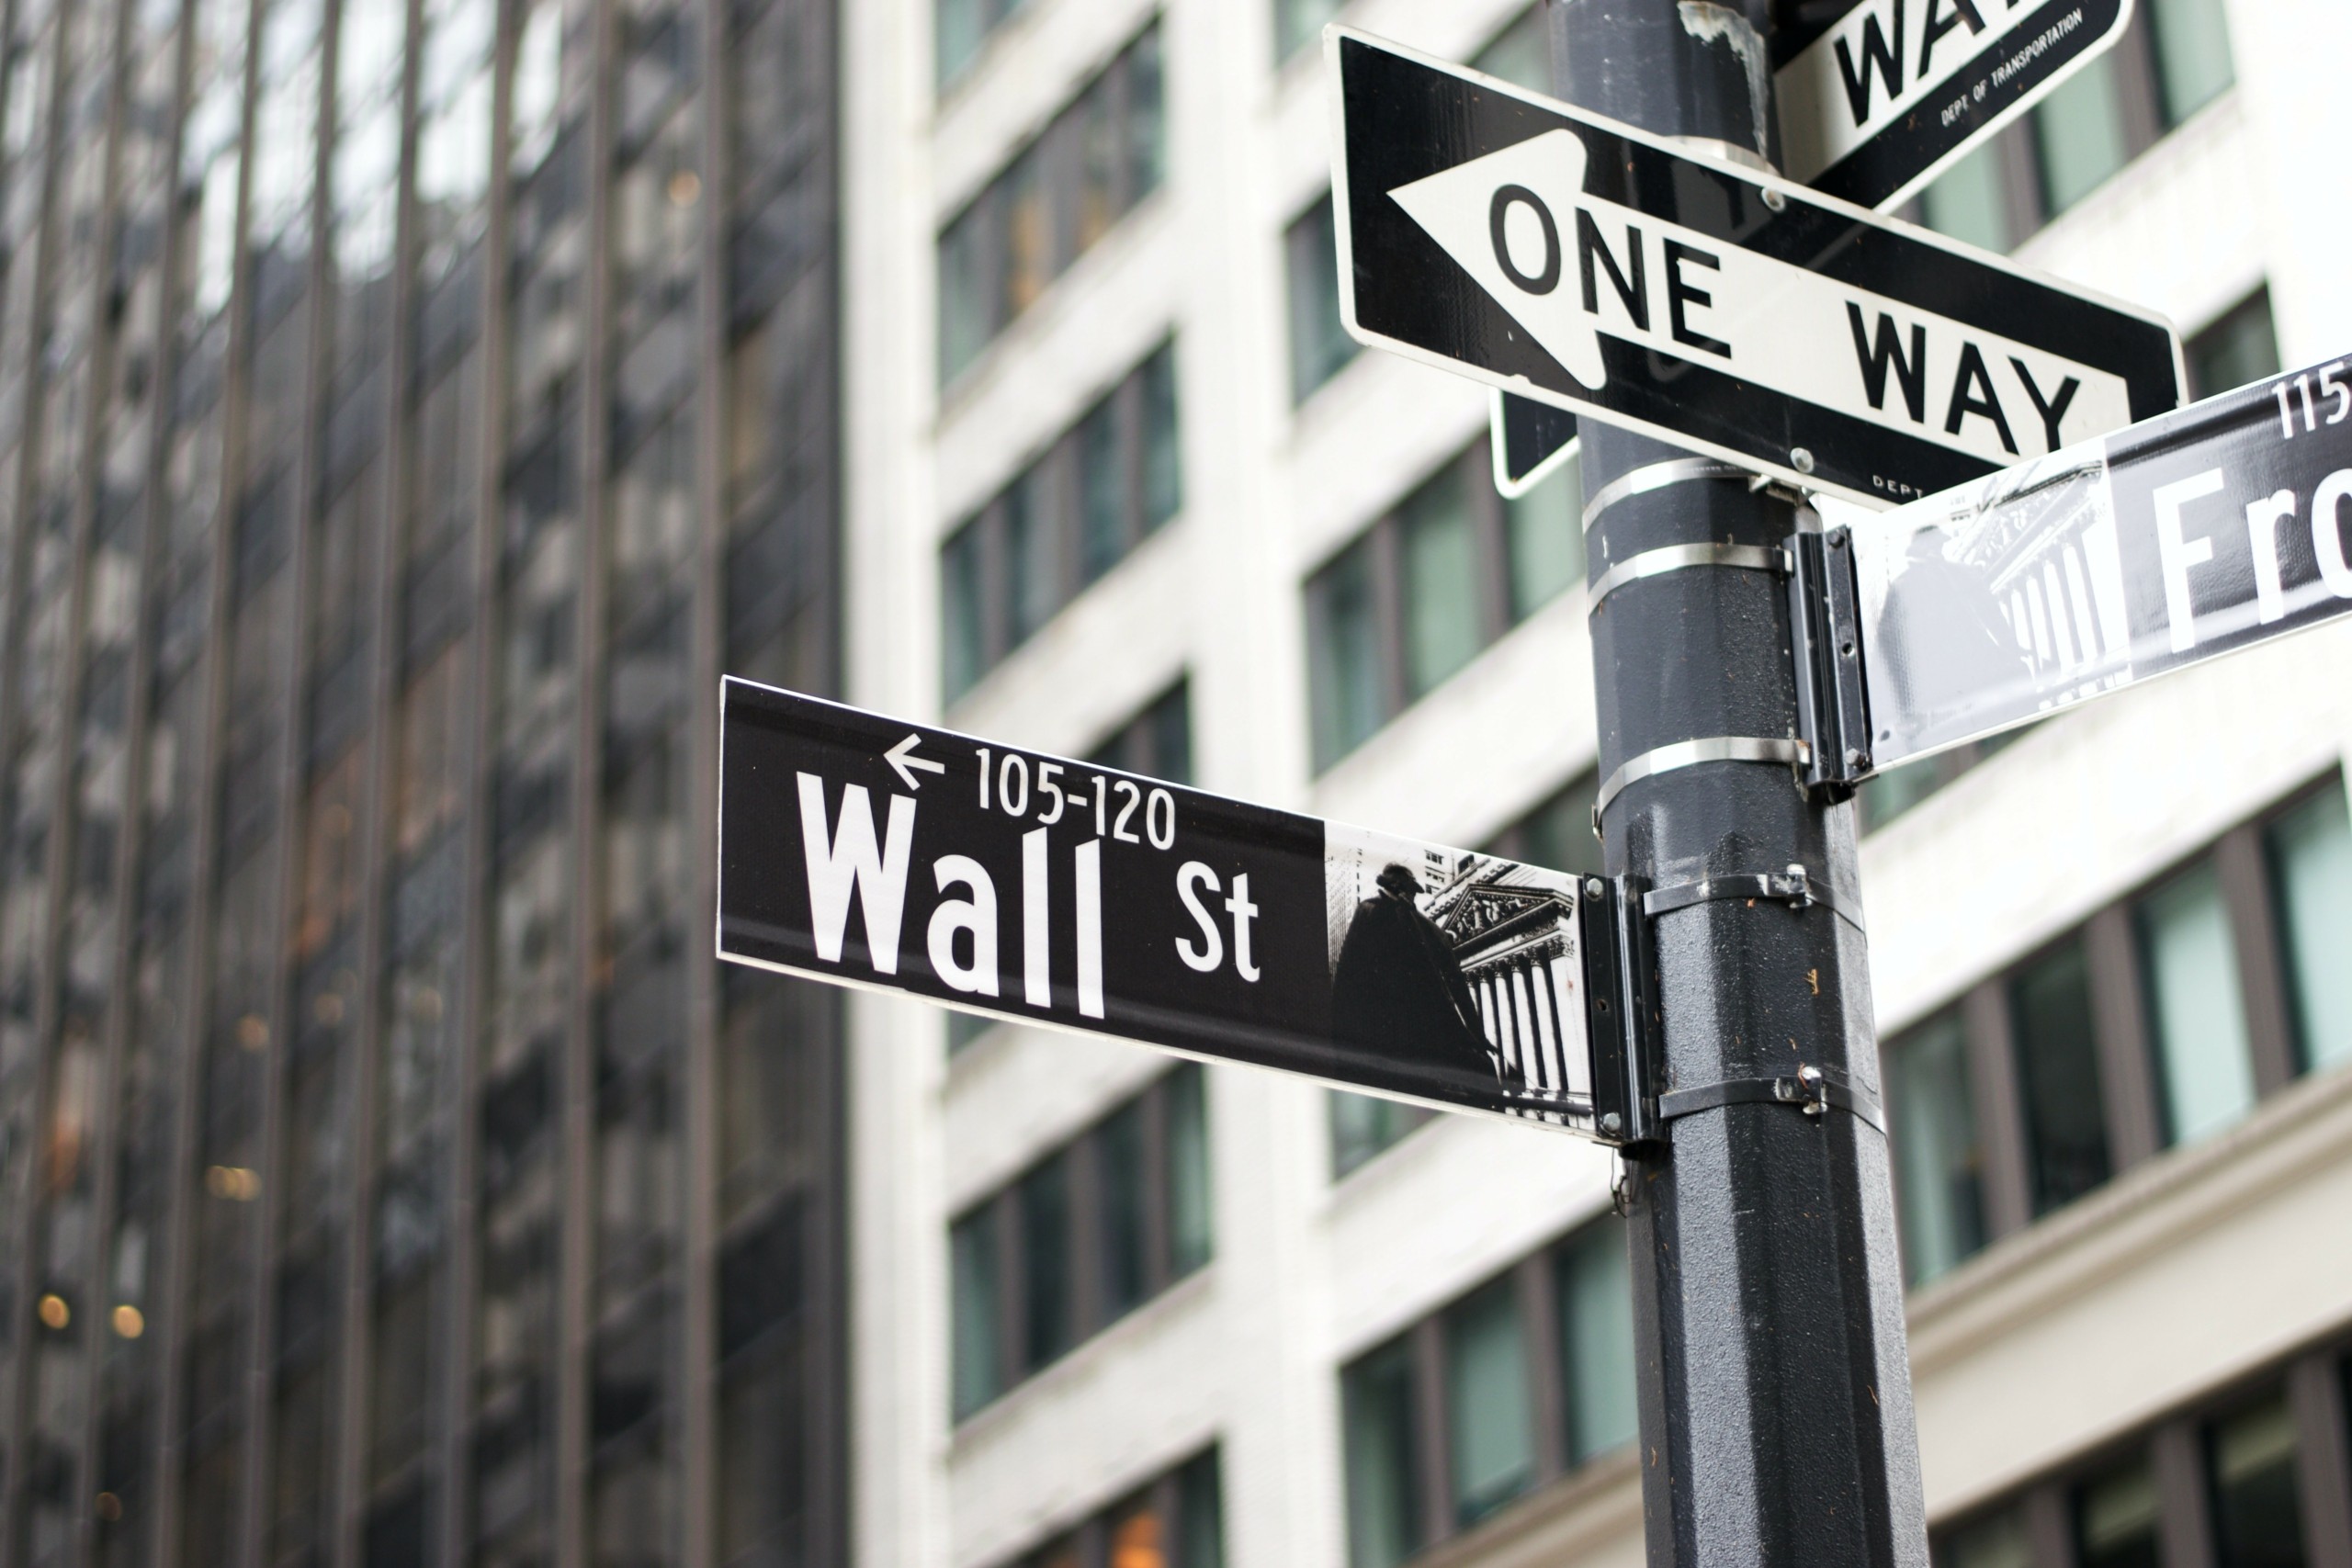 Wall Street: Μικρές μεταβολές για τους δείκτες πριν το κλείσιμο της καλύτερης εβδομάδας του έτους (upd)